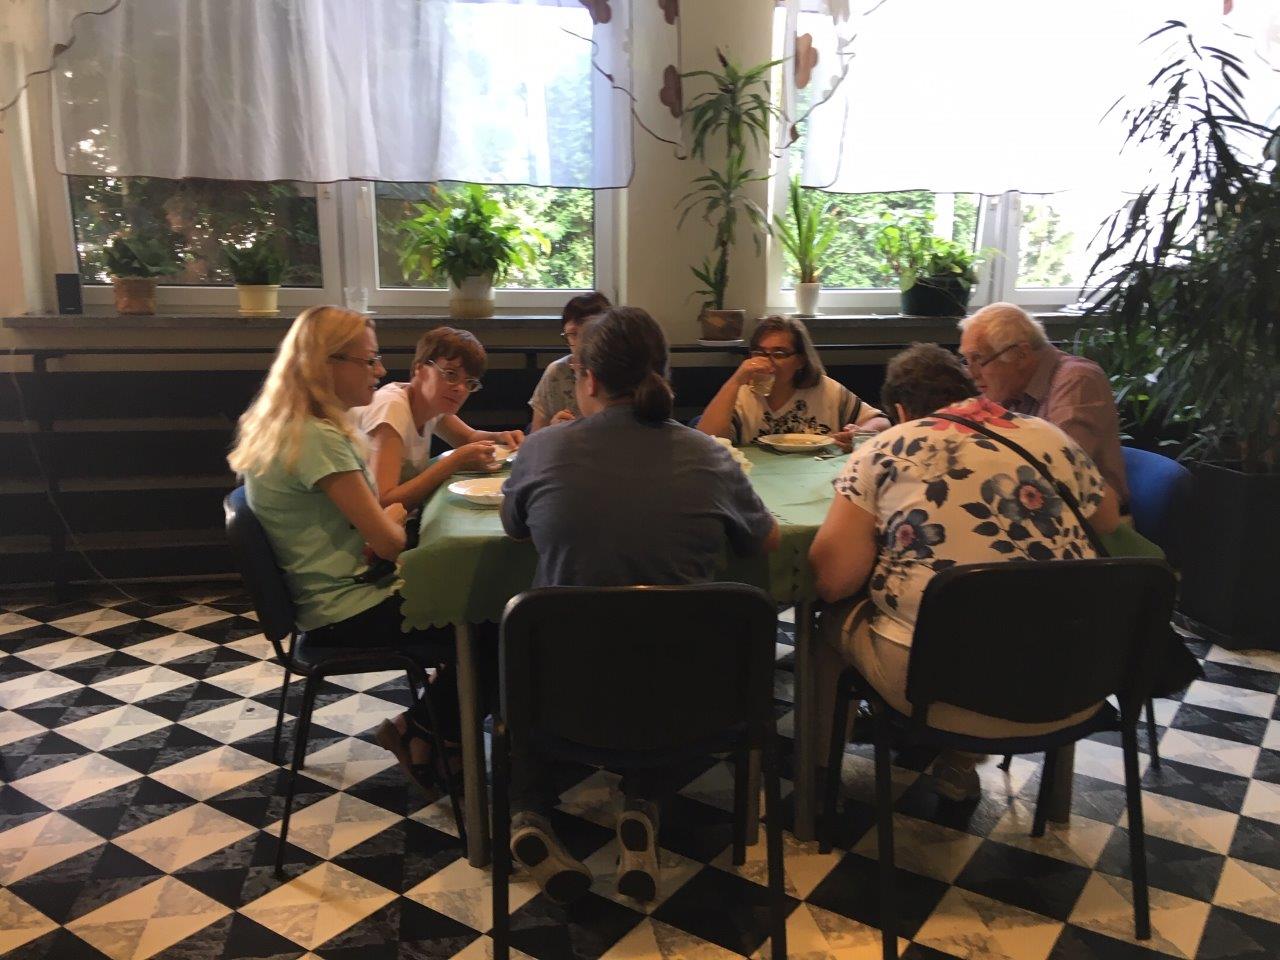 Zjazdowicze podczas posiłku w jadalni z charakterystyczną biało-czarną podłogą w stylu szachownicy, siedzący przy kilkuosobowym stole przy oknie z gładkimi białymi firankami